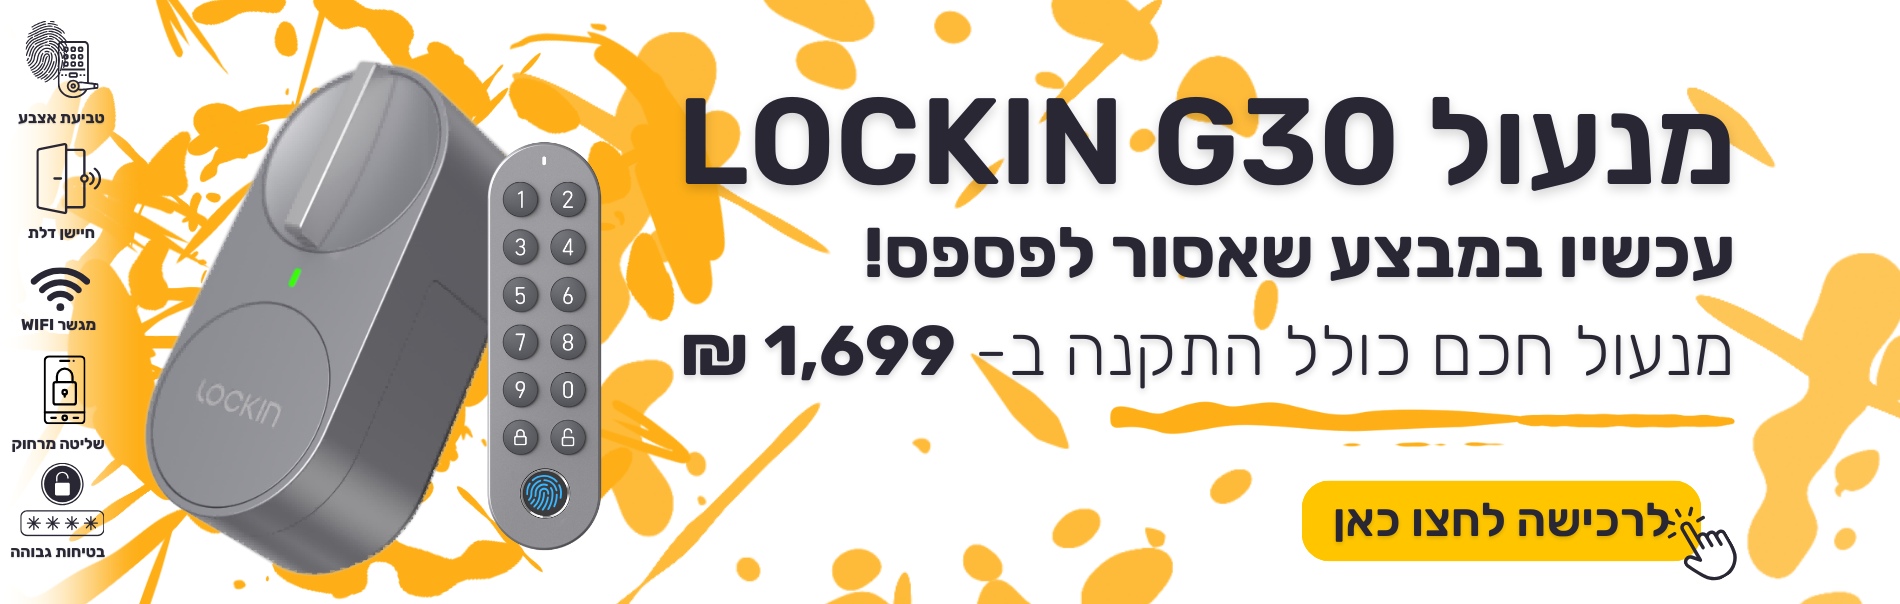 lockin G30